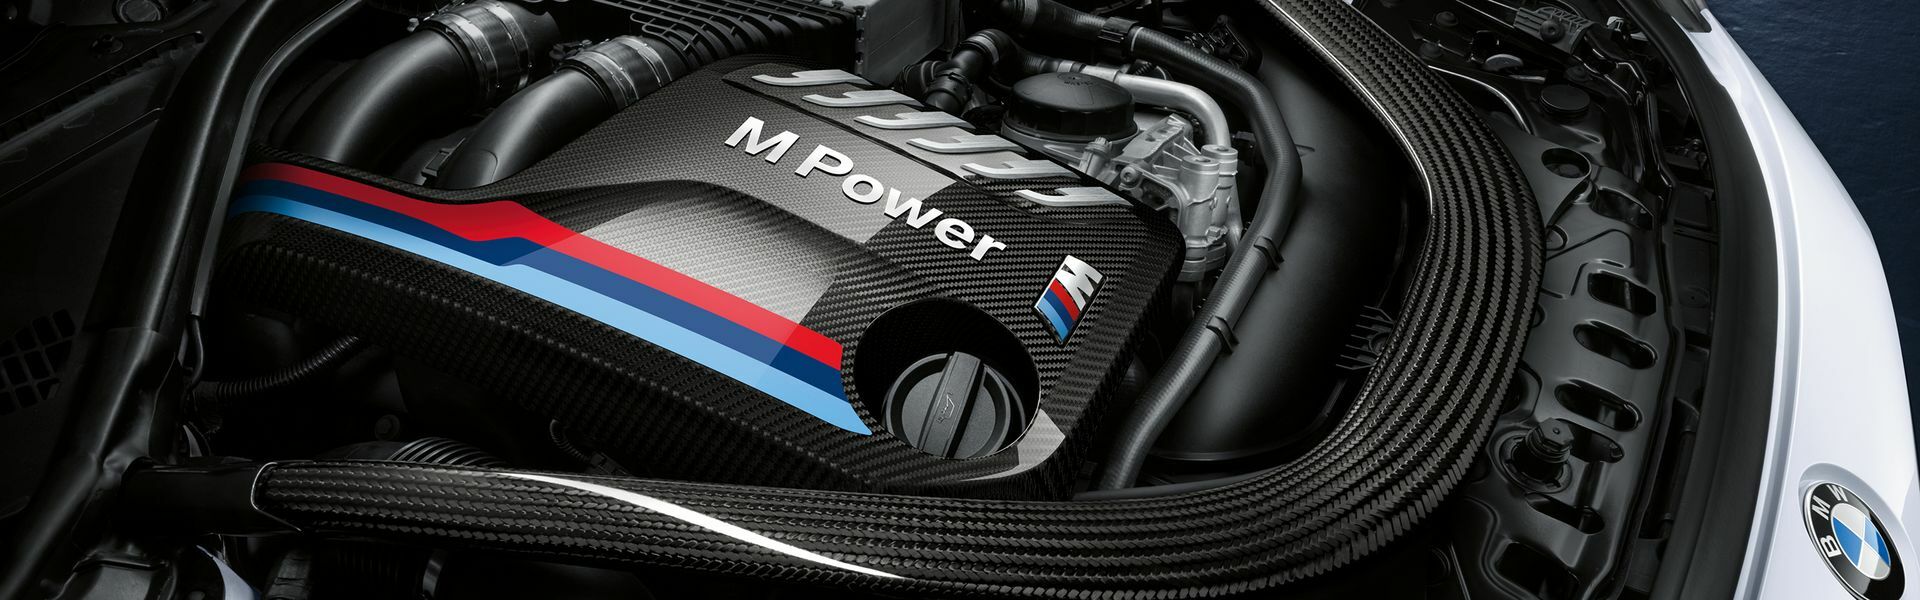 Zvýšení výkonu/ Softwarové úpravy/ Drobné performance díly pro automobil Porsche 911 Carrera Cabriolet /S/4/4S/GTS 991